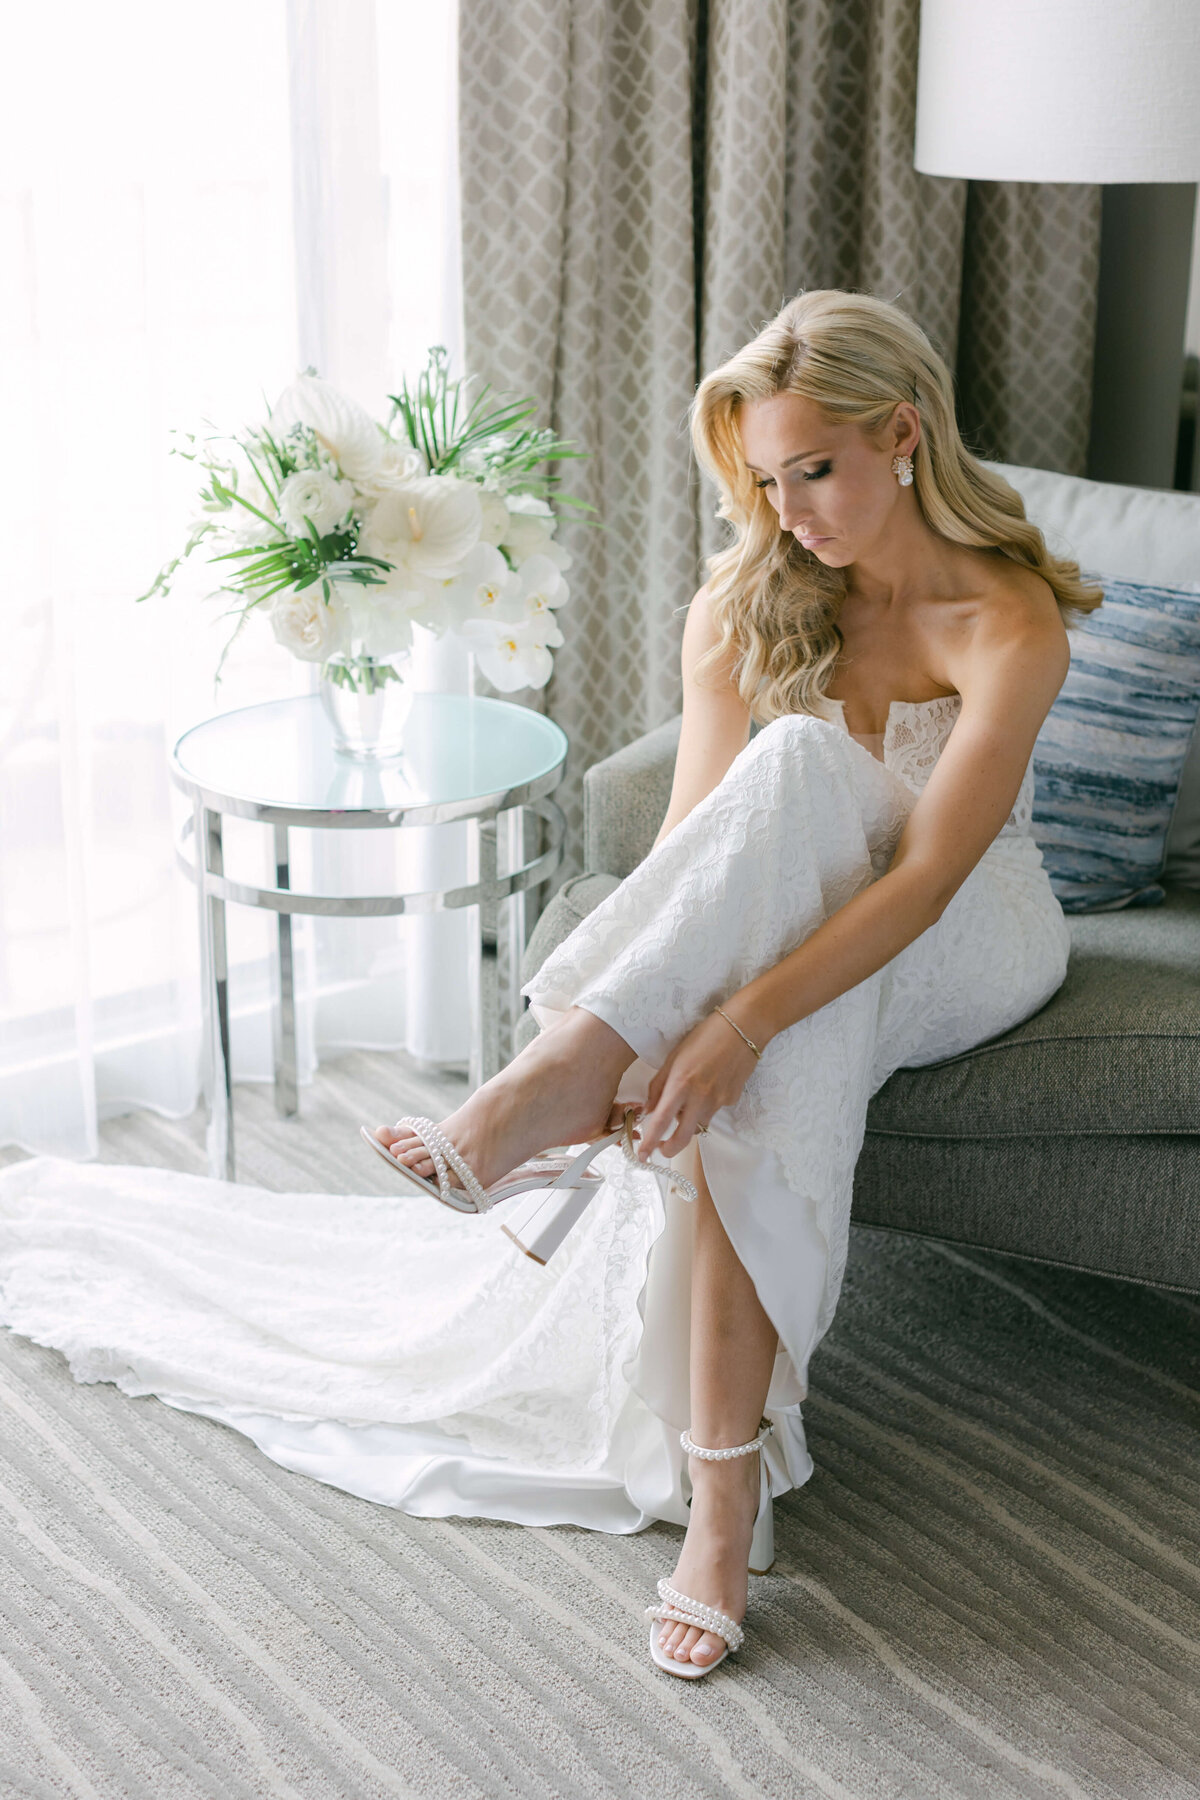 A bride puts on her heels.